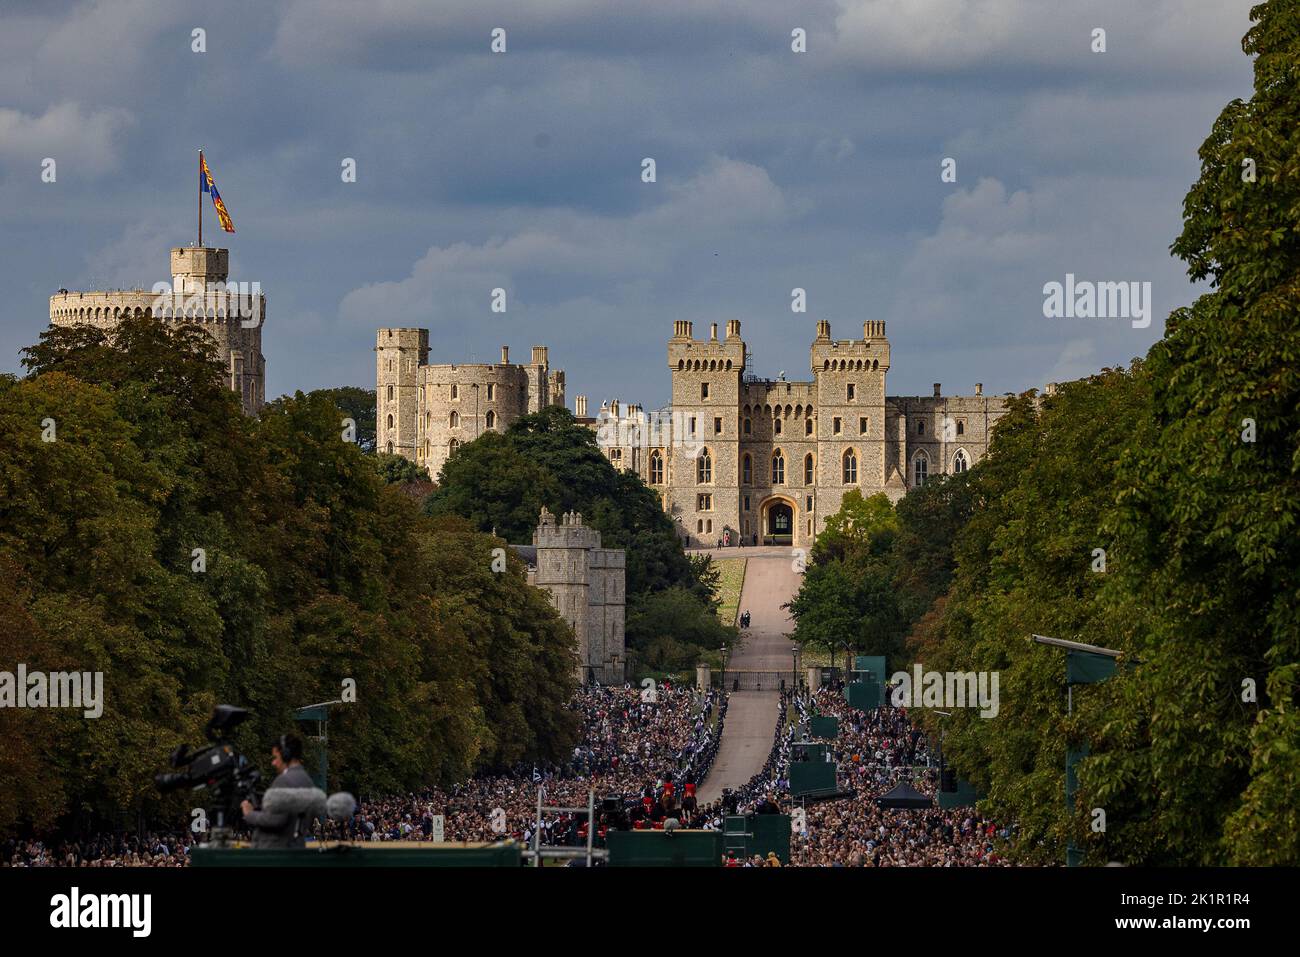 Die Königin kehrt zum letzten Mal nach dem Staatsfuneral in der Westminster Abbey in ihr geliebtes Haus Windsor Castle zurück. Riesige Menschenmengen säumten den langen Spaziergang, um sich von Ihrer Majestät zu verabschieden, als der staatliche Leichenwagen langsam an ihnen vorbeiging. Stockfoto